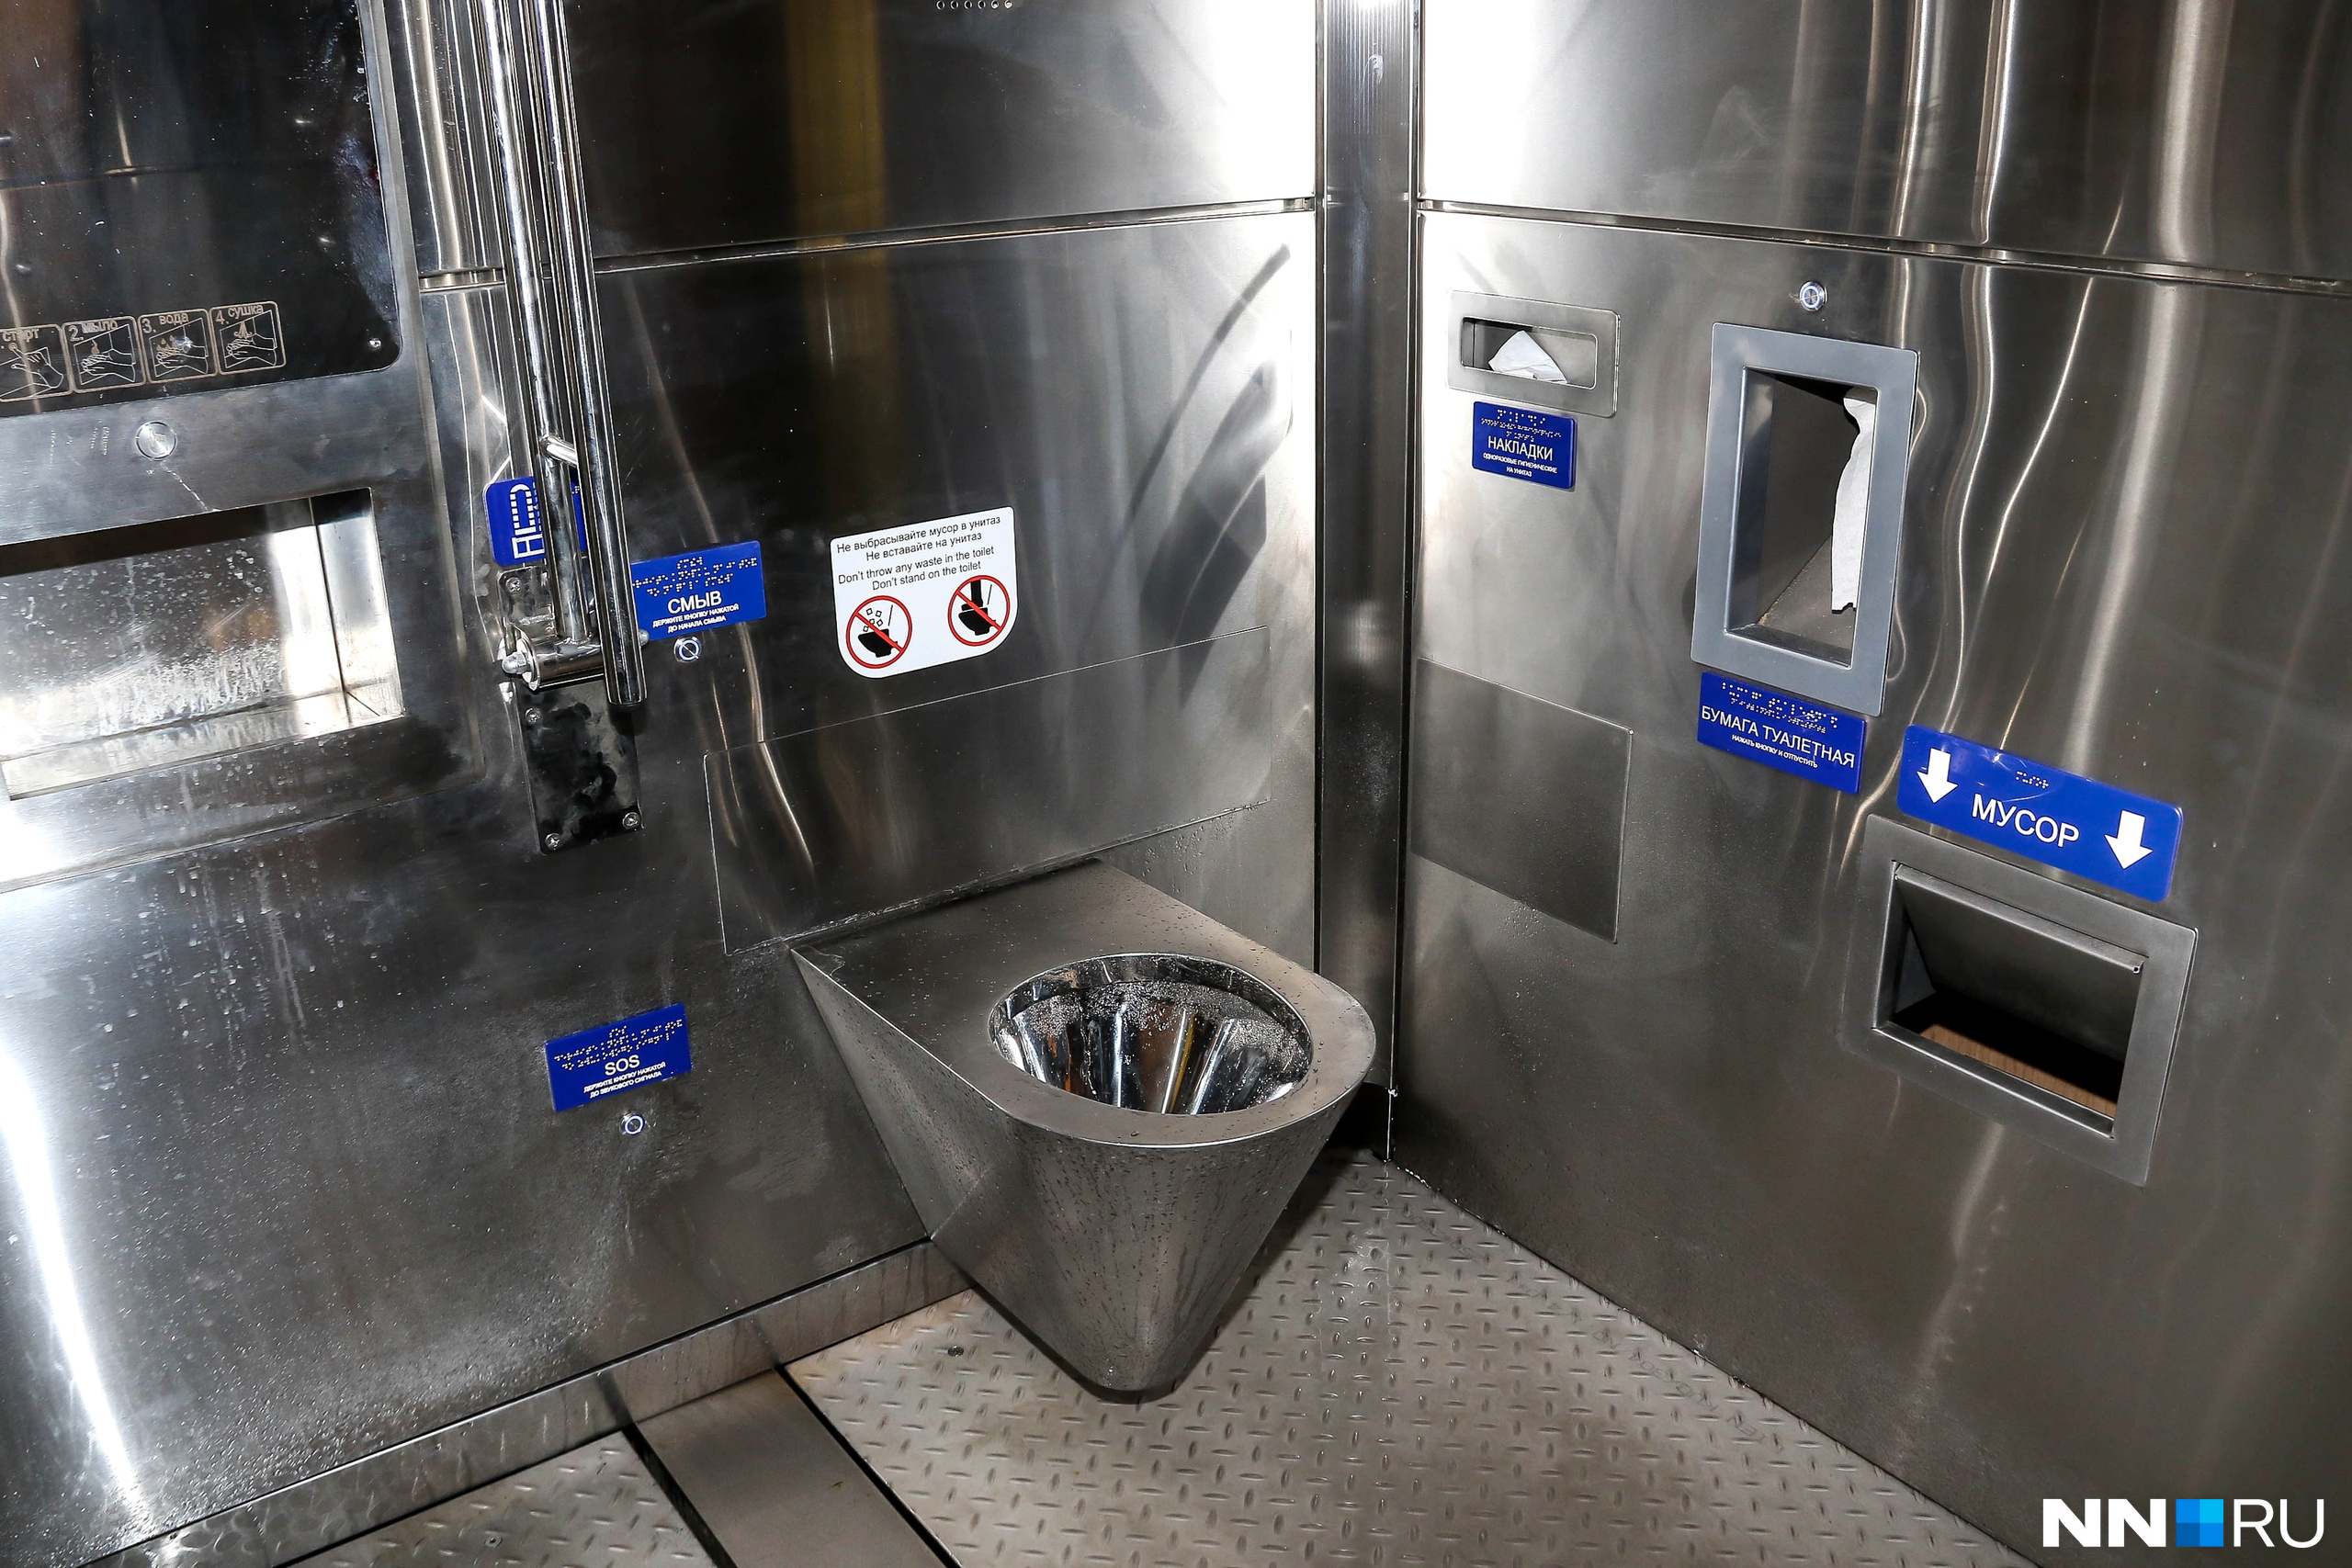 В санузле вакуумные унитазы и система автоматической помывки пола и сантехники после каждого посетителя<br>